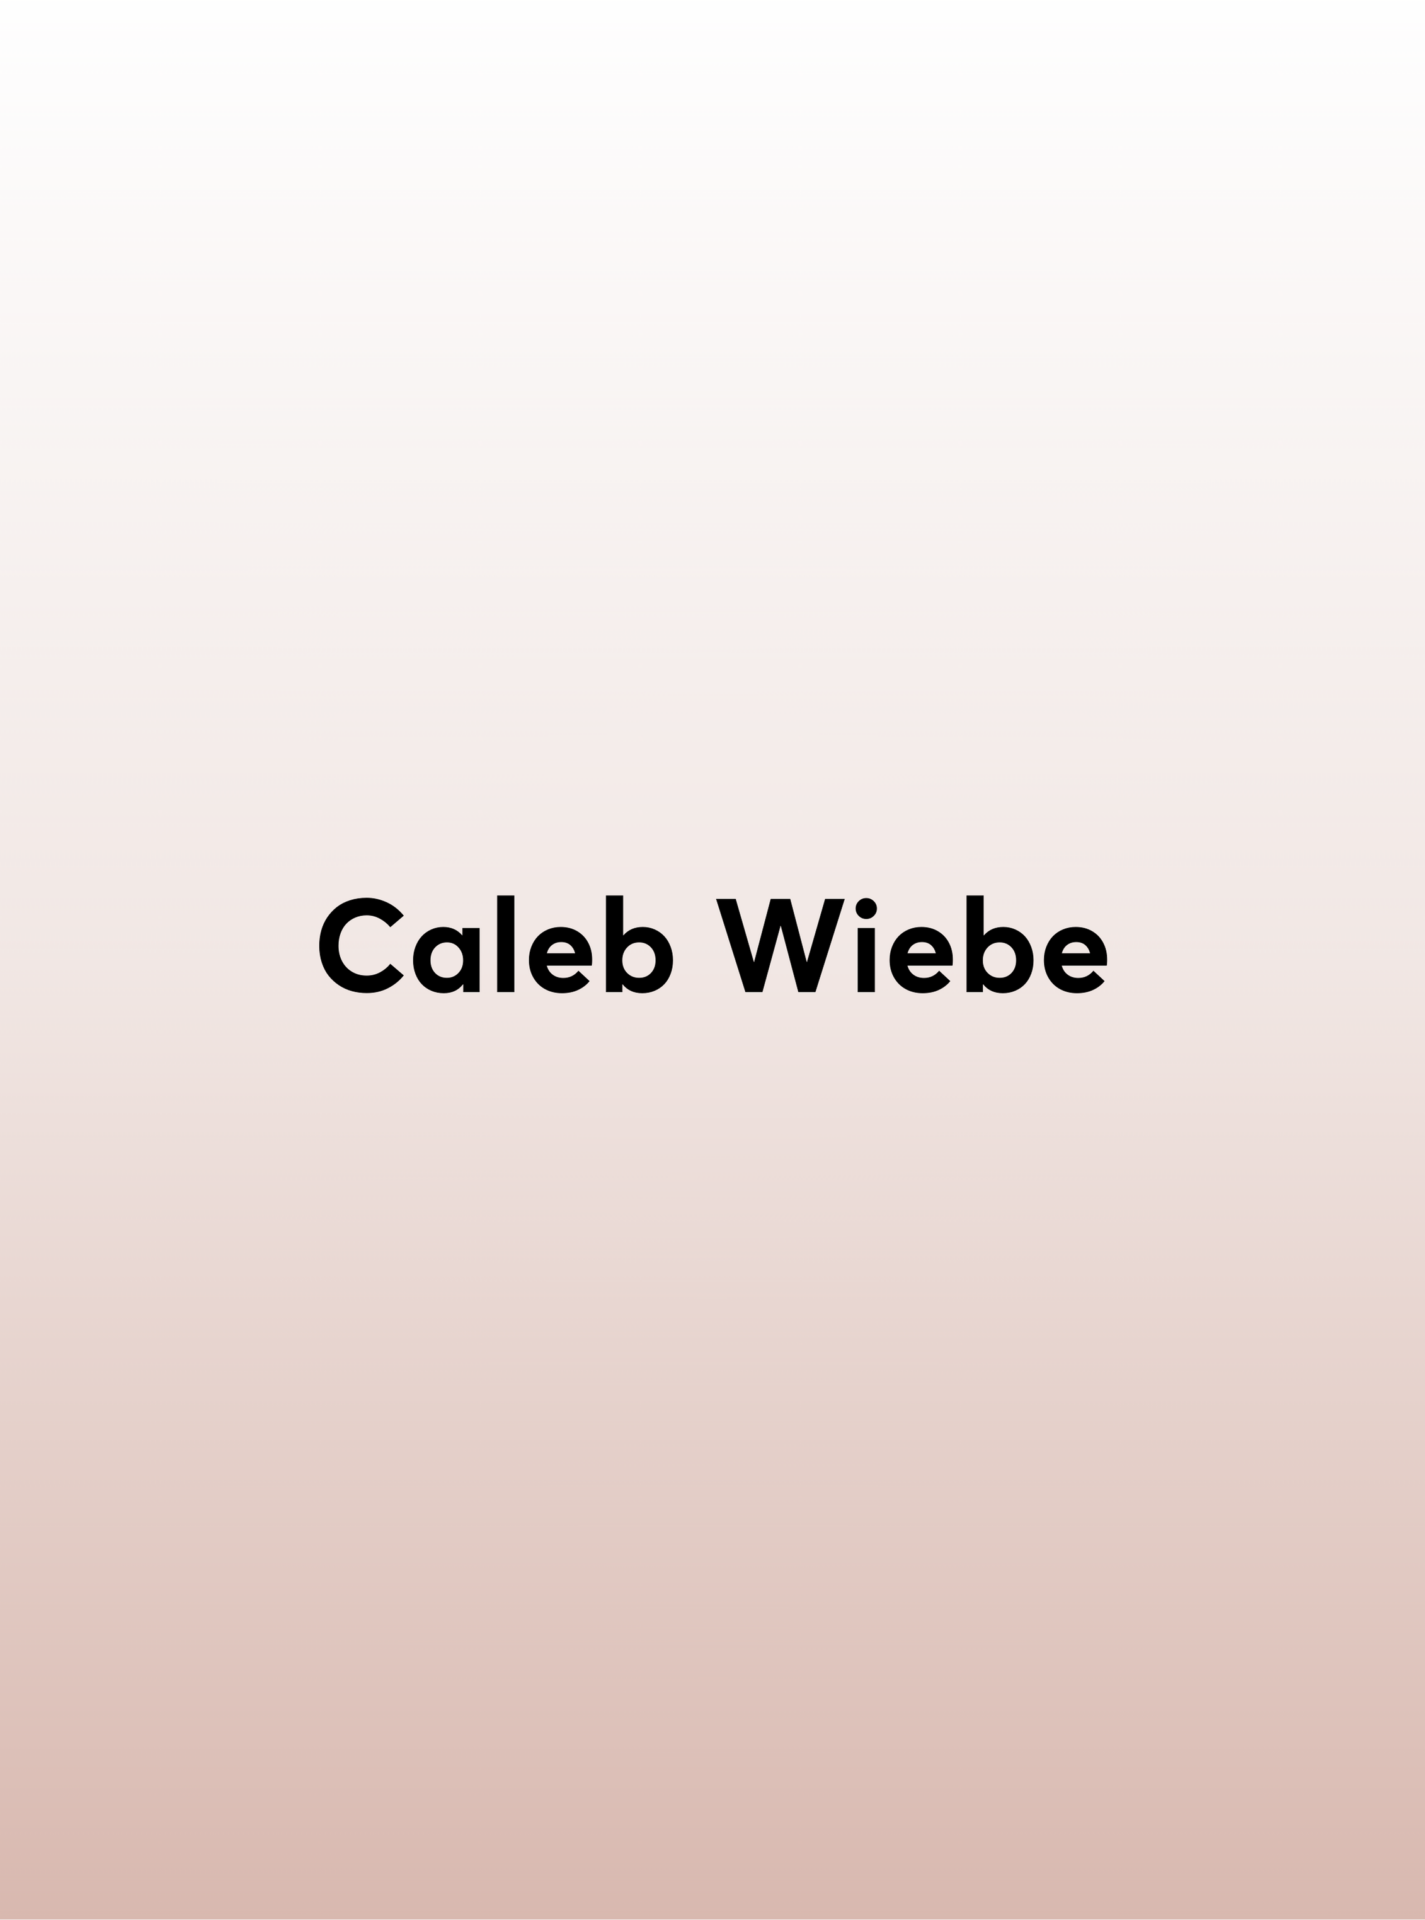 Caleb Wiebe